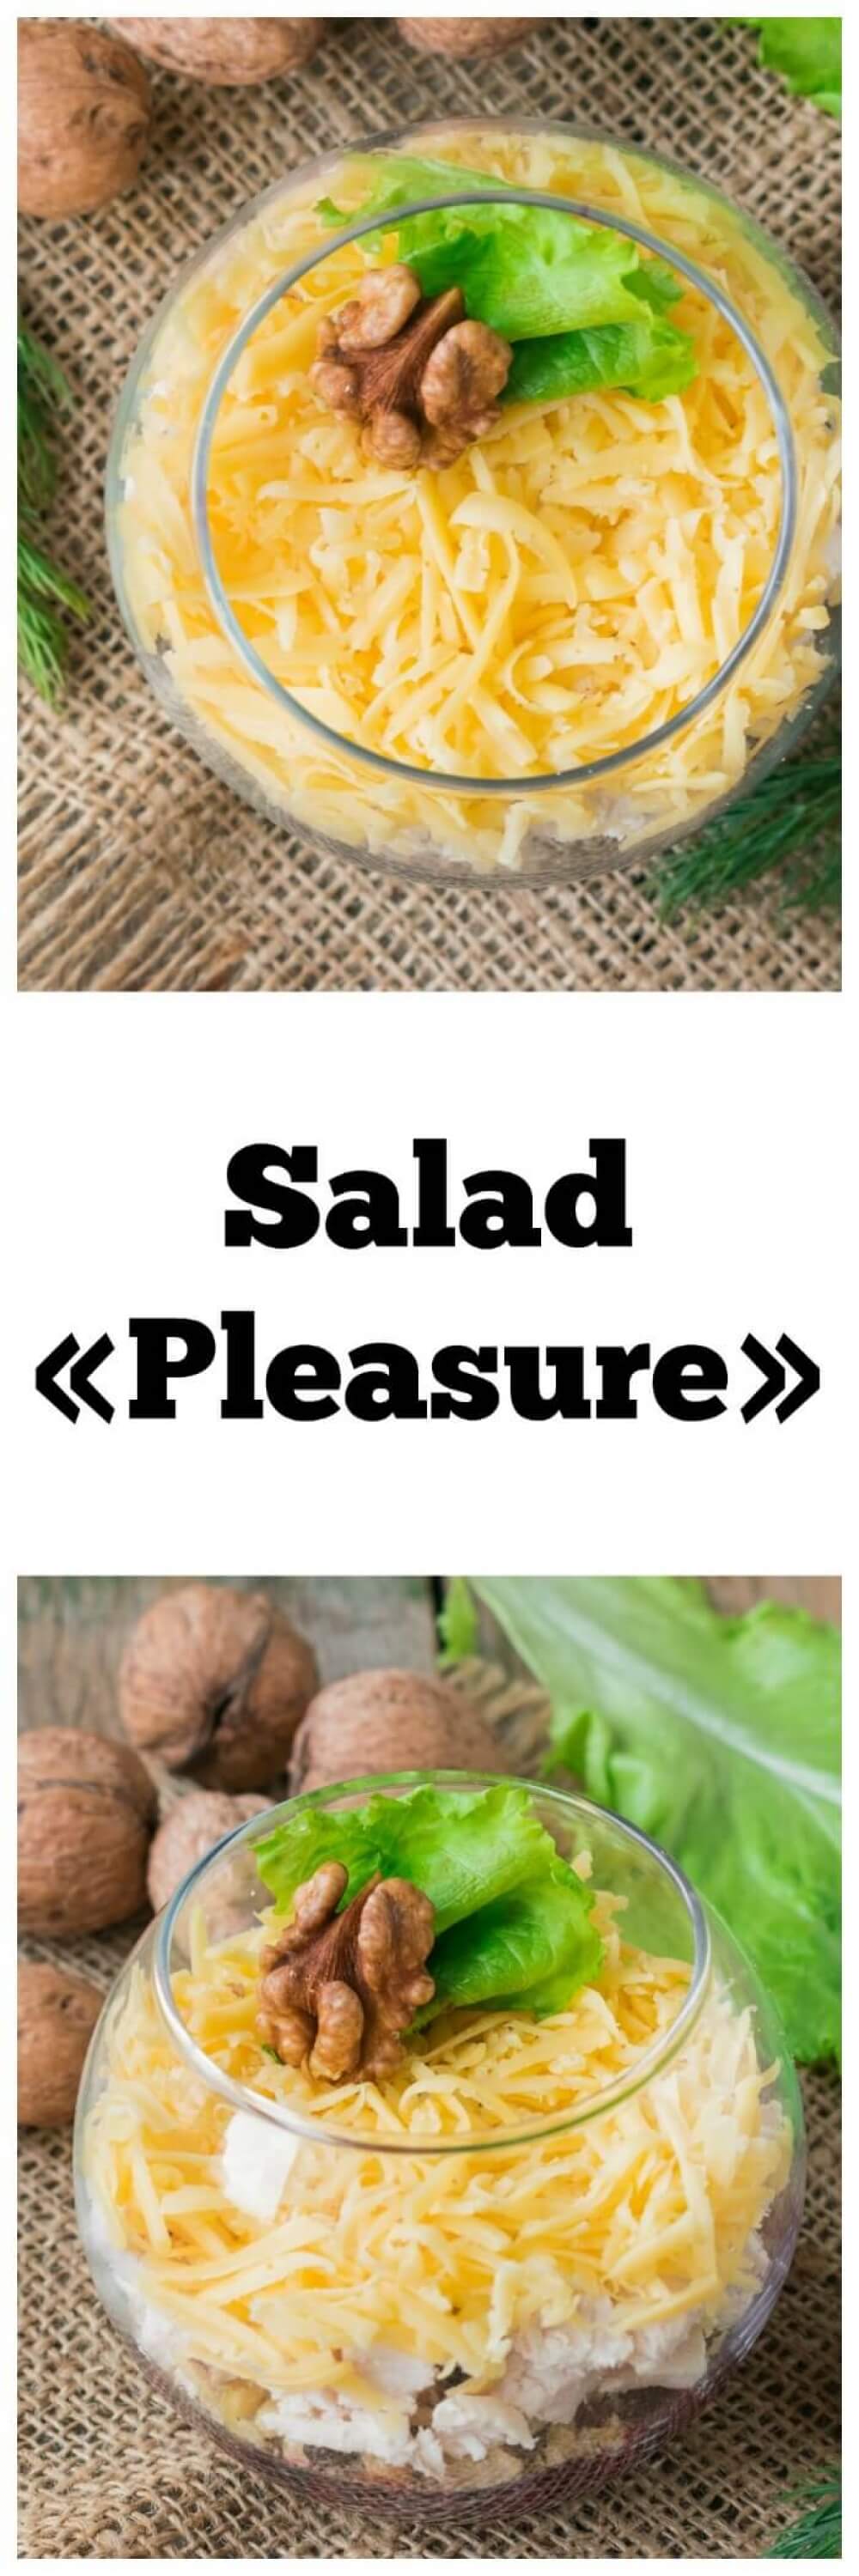 Salad «Pleasure»